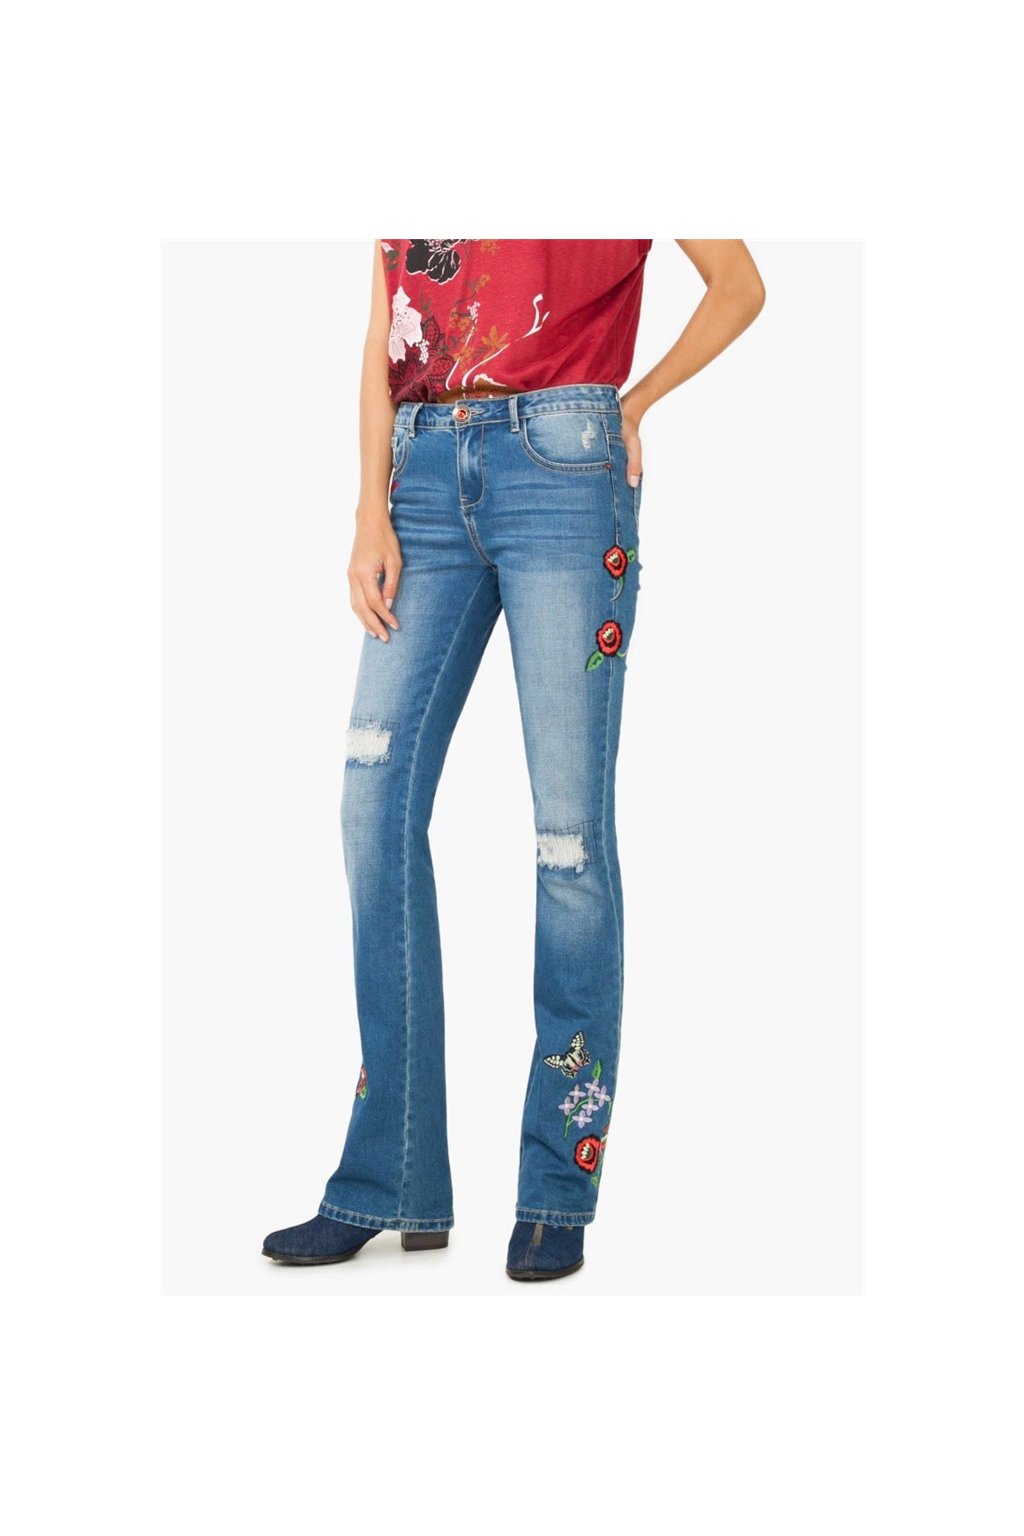 DESIGUAL kalhoty džíny dámské  (Barva 0, Velikost 36)